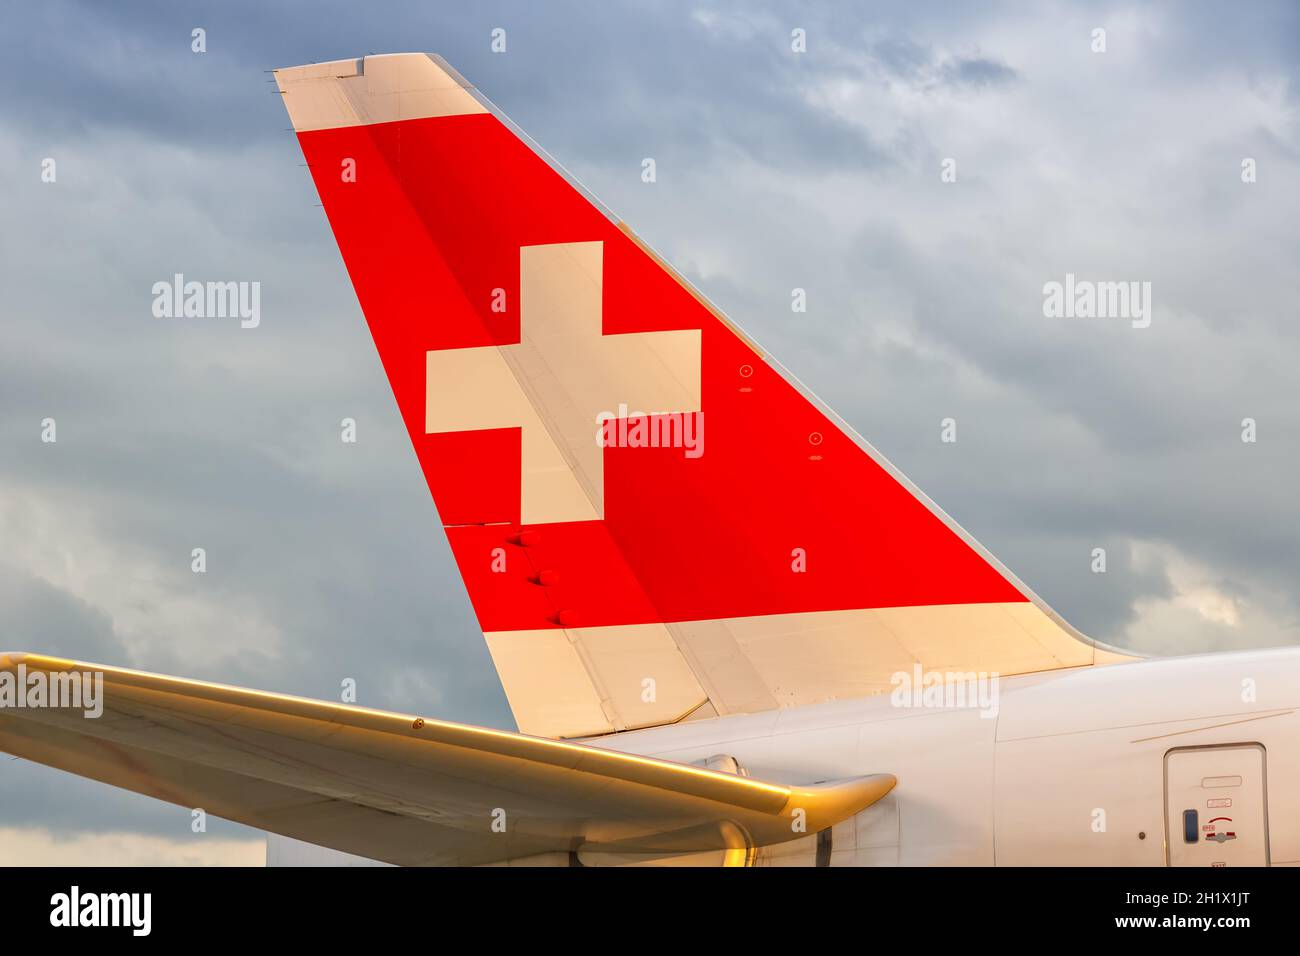 Zurich, Switzerland - July 22, 2020: Swiss Airbus airplane tail at Zurich Airport (ZRH) in Switzerland. Stock Photo